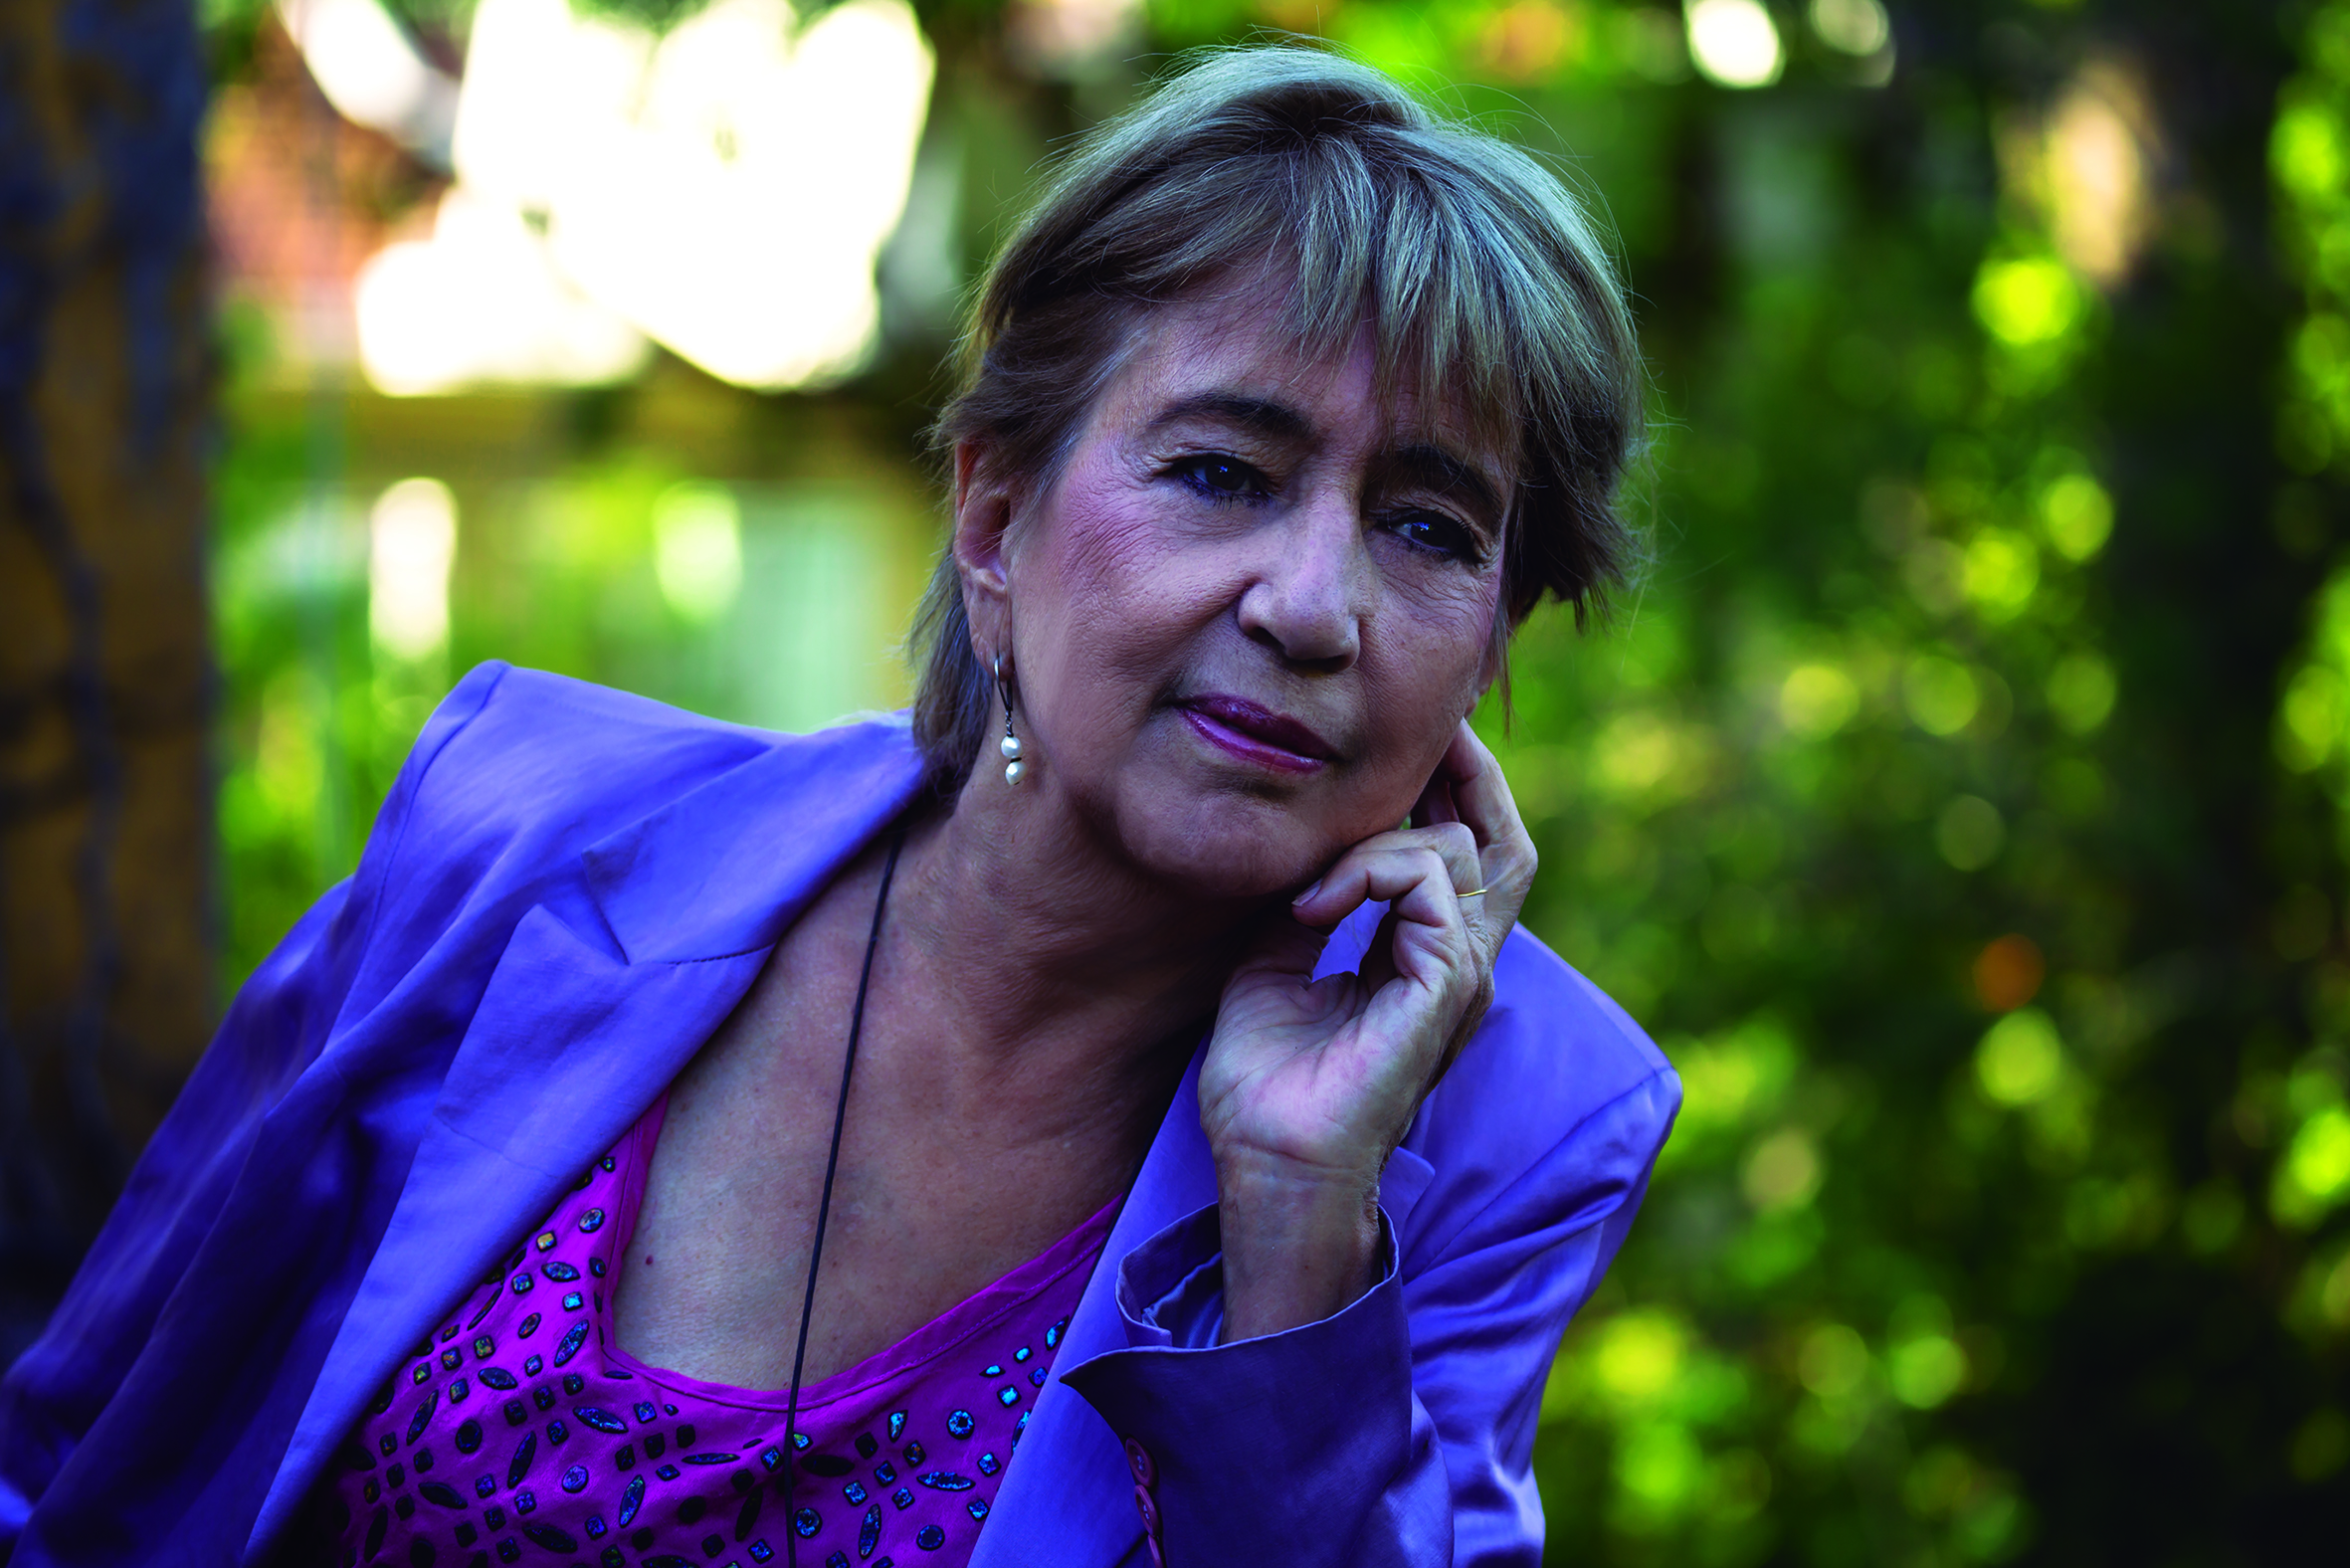 Inés Fernández Moreno es autora de libros como "La última vez que maté a mi madre", "La profesora de español", "El cielo no existe" y "No te quiero más".